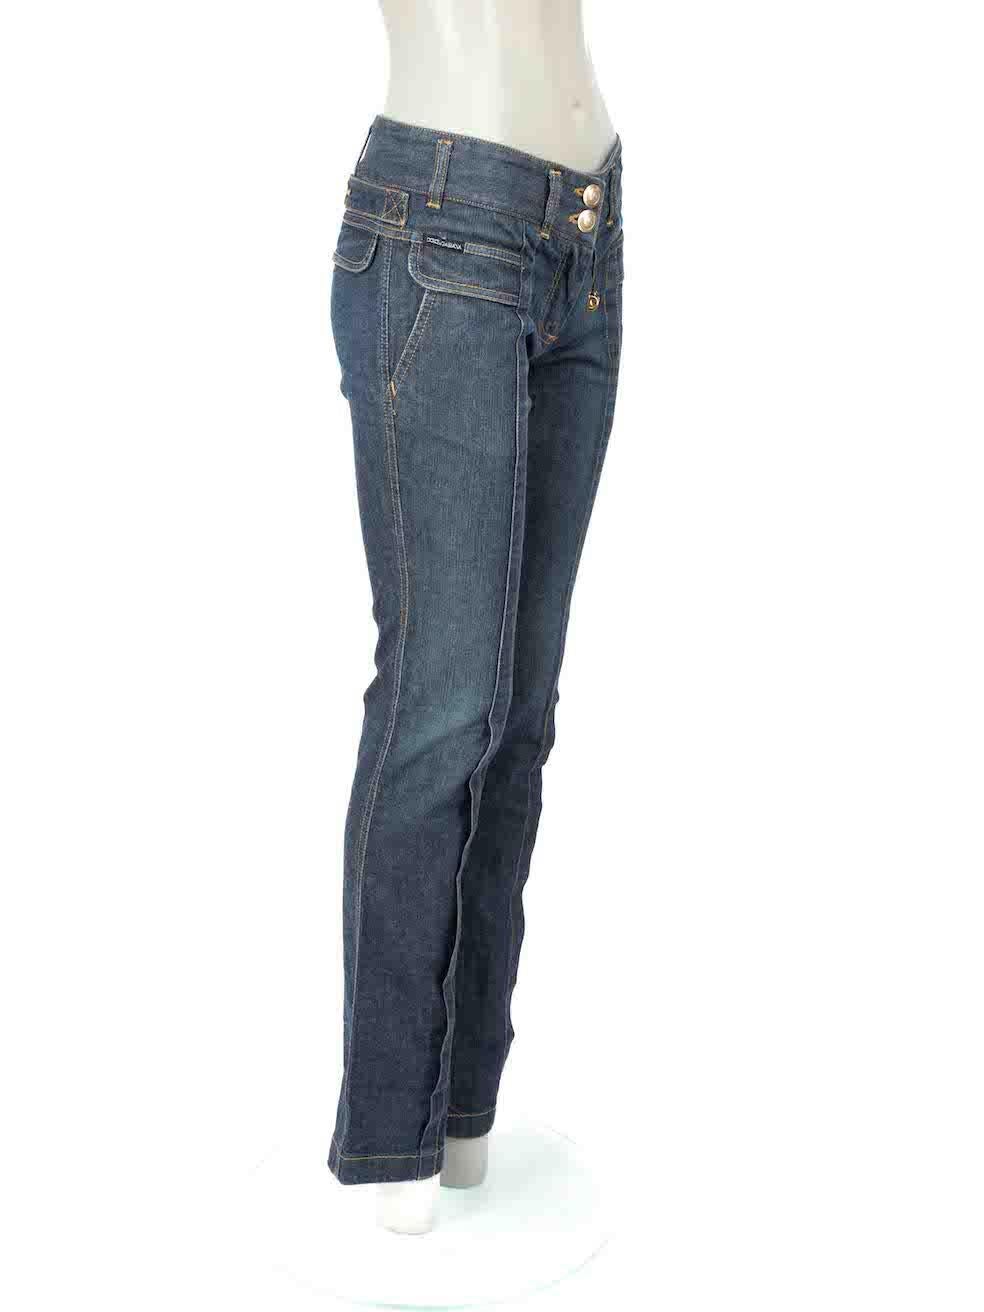 CONDIT ist sehr gut. Die Jeans weisen nur minimale Abnutzungserscheinungen auf. Minimale Verfärbungen am Bund der Jeans und an der Knopfleiste dieses gebrauchten Dolce & Gabbana